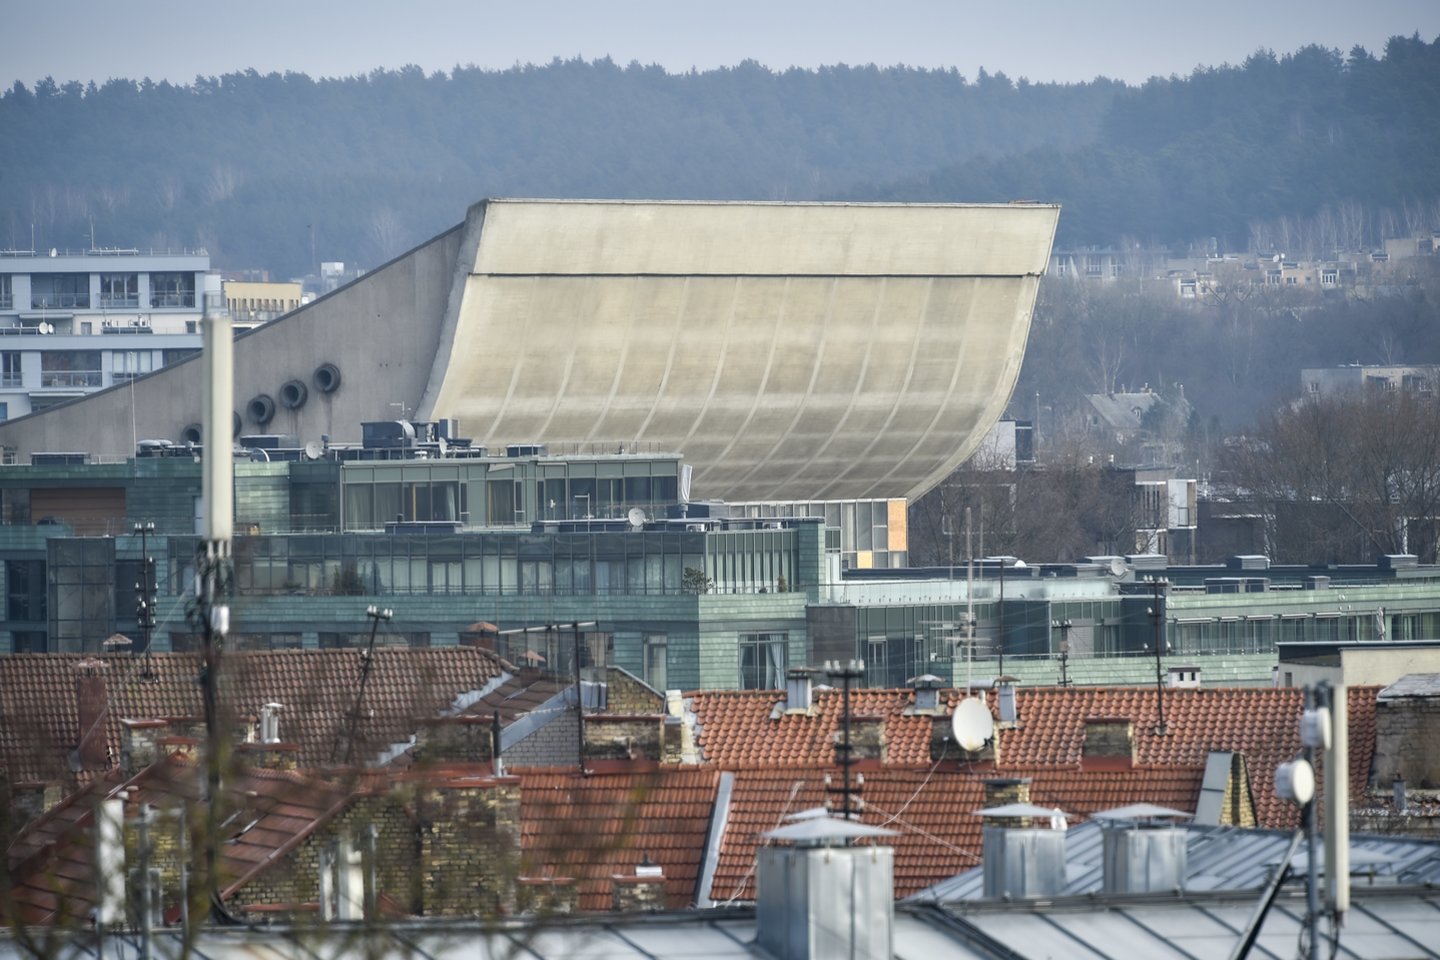 Kol Vyriausybė apsispręs dėl tolesnės Vilniaus koncertų ir sporto rūmų ateities, Turto bankas, kuris rūpinasi šio kultūros paveldo pastato būkle, planuoja atlikti būtiniausius pastato tvarkymo ir konservavimo darbus.<br>V.Ščiavinsko nuotr.